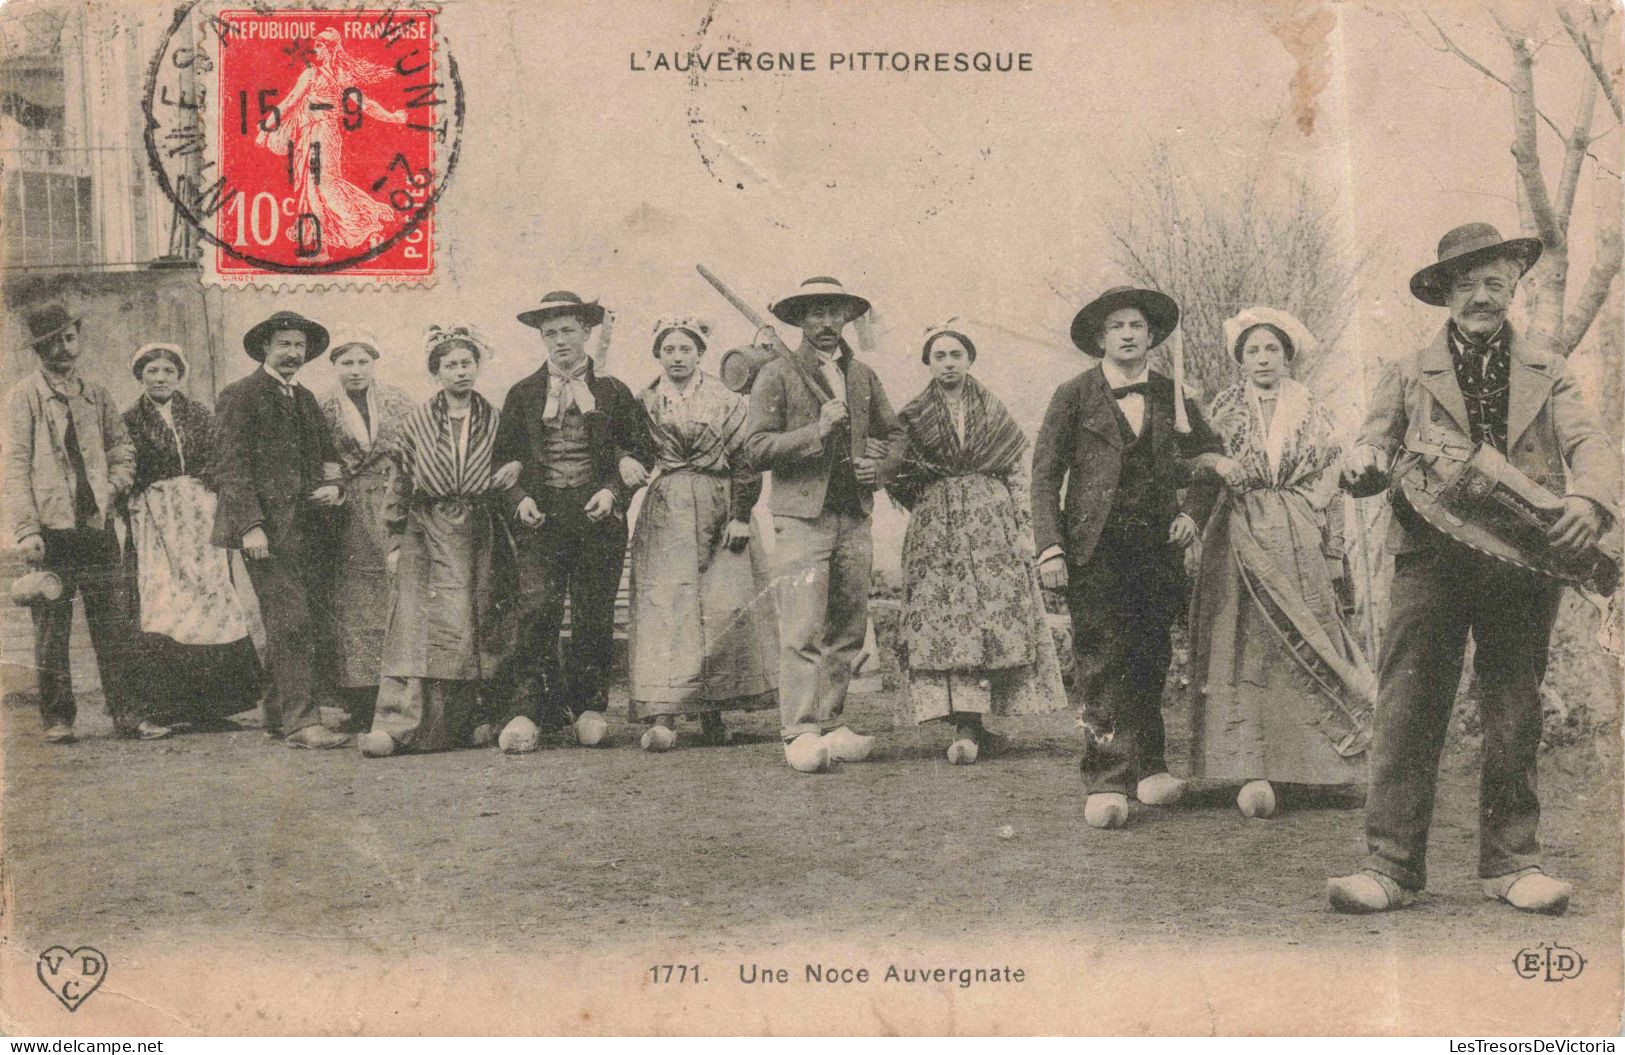 PHOTOGRAPHIE - Une Noce Auvergnate - L'Auvergne Pittoresque - Carte Postale Ancienne - Fotografie